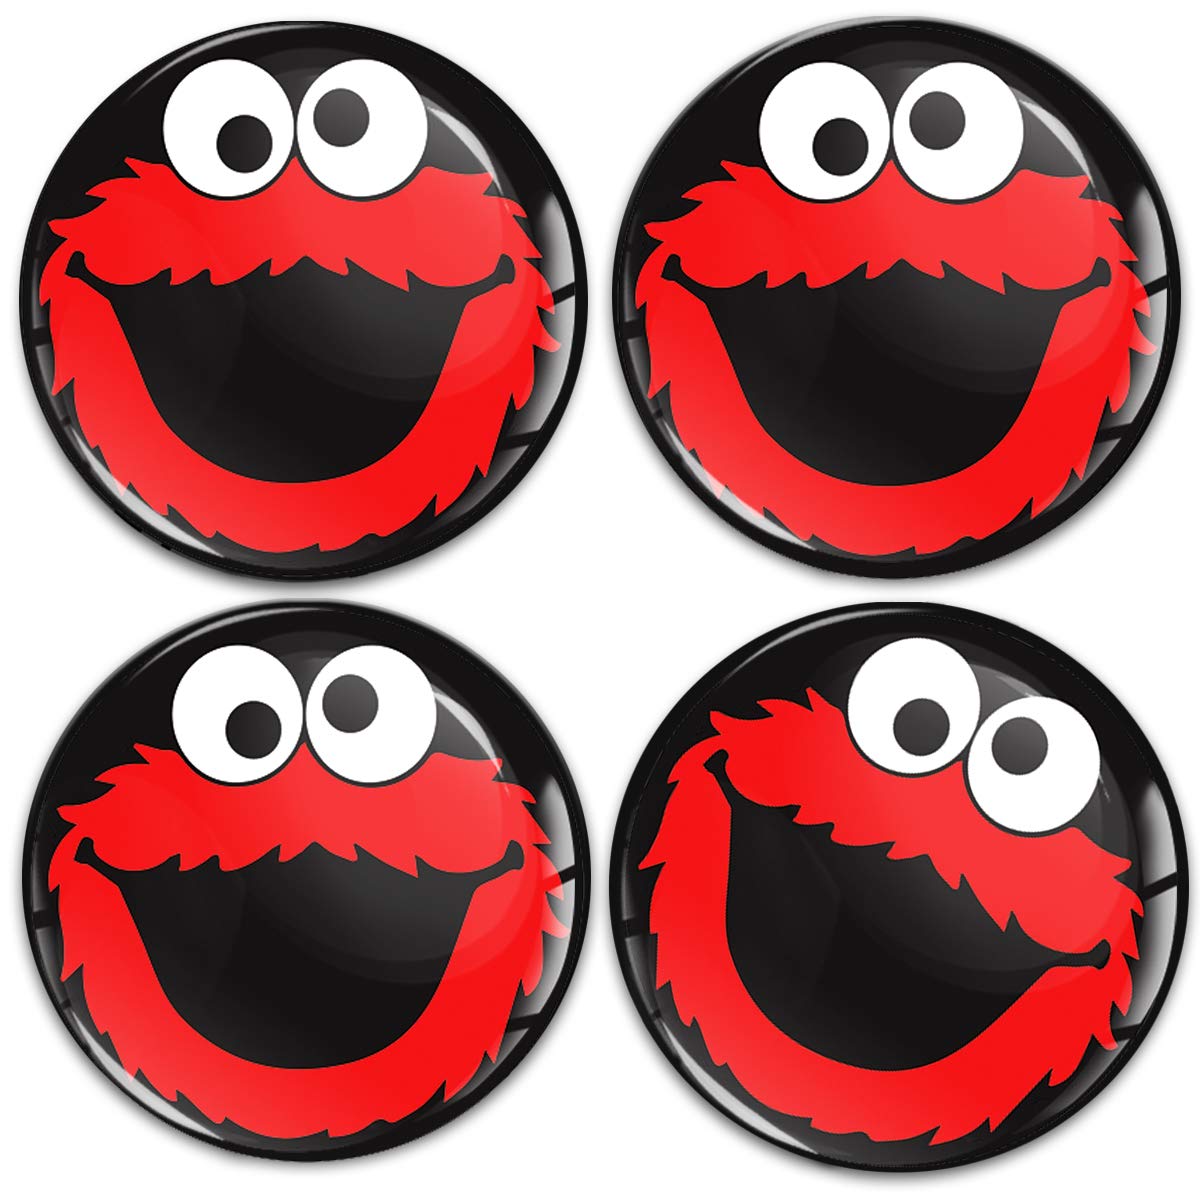 SkinoEu Aufkleber Autoaufkleber für Radkappen Nabenkappen Nabendeckel Radnabendeckel Rad-Aufkleber 65mm Rot Elmo Cookie Monster A 5965 von Skino